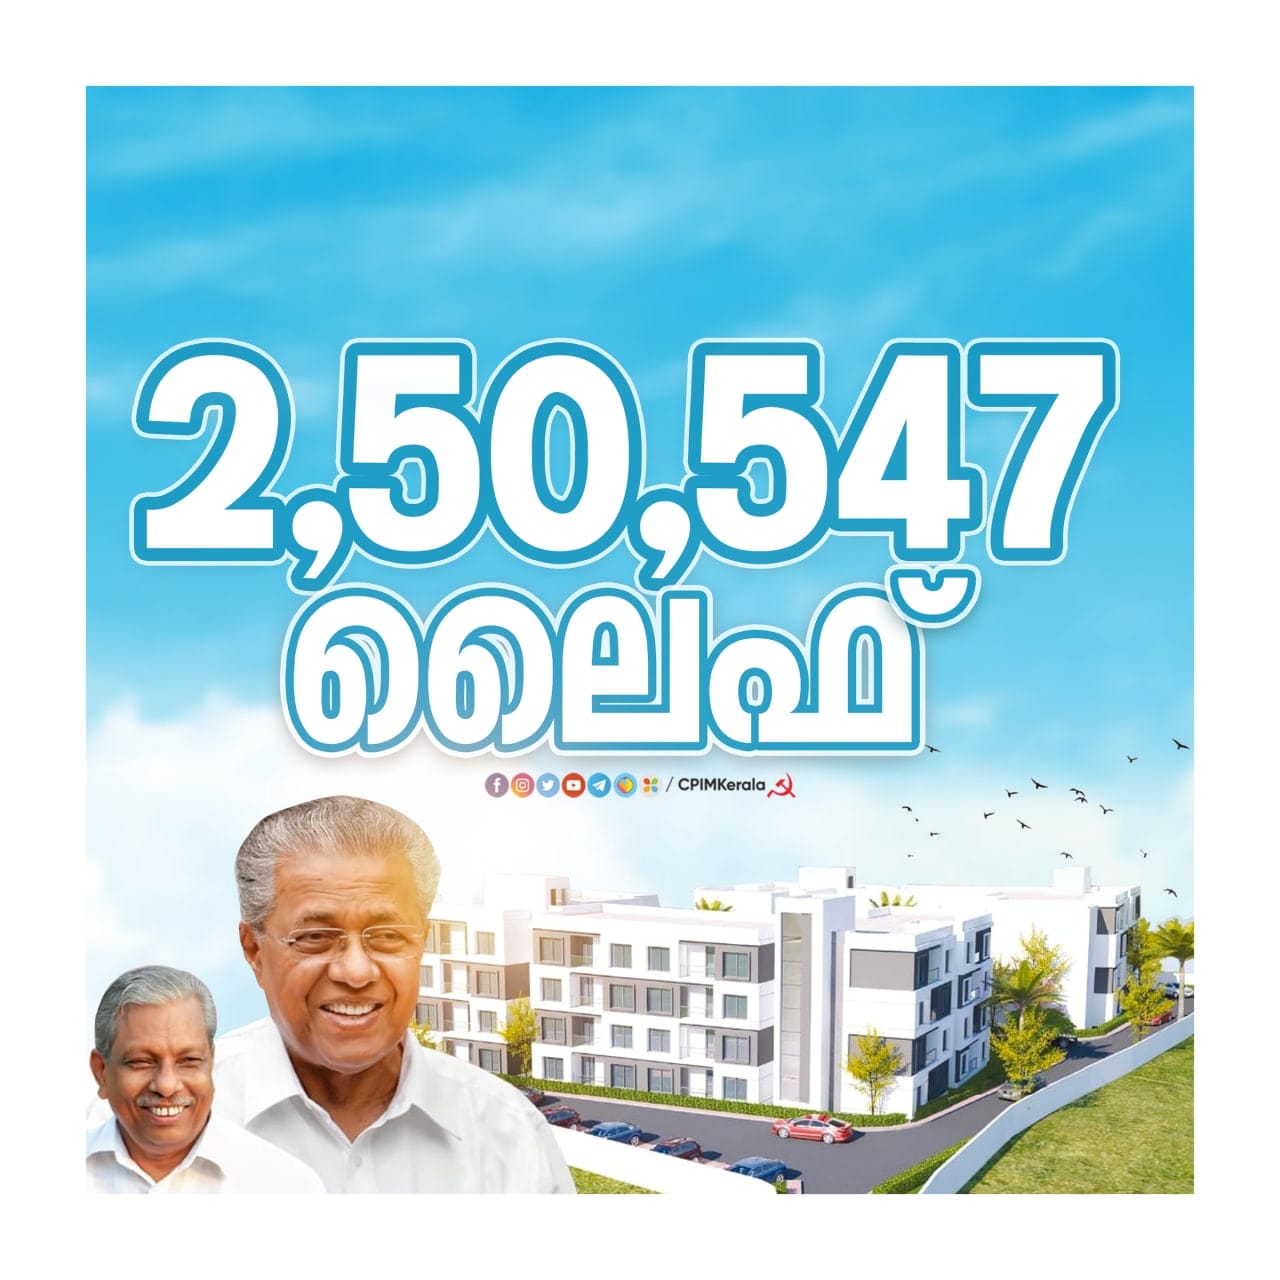 250.547 logements construits pour faire du Kerala un état dépourvu de sans abris